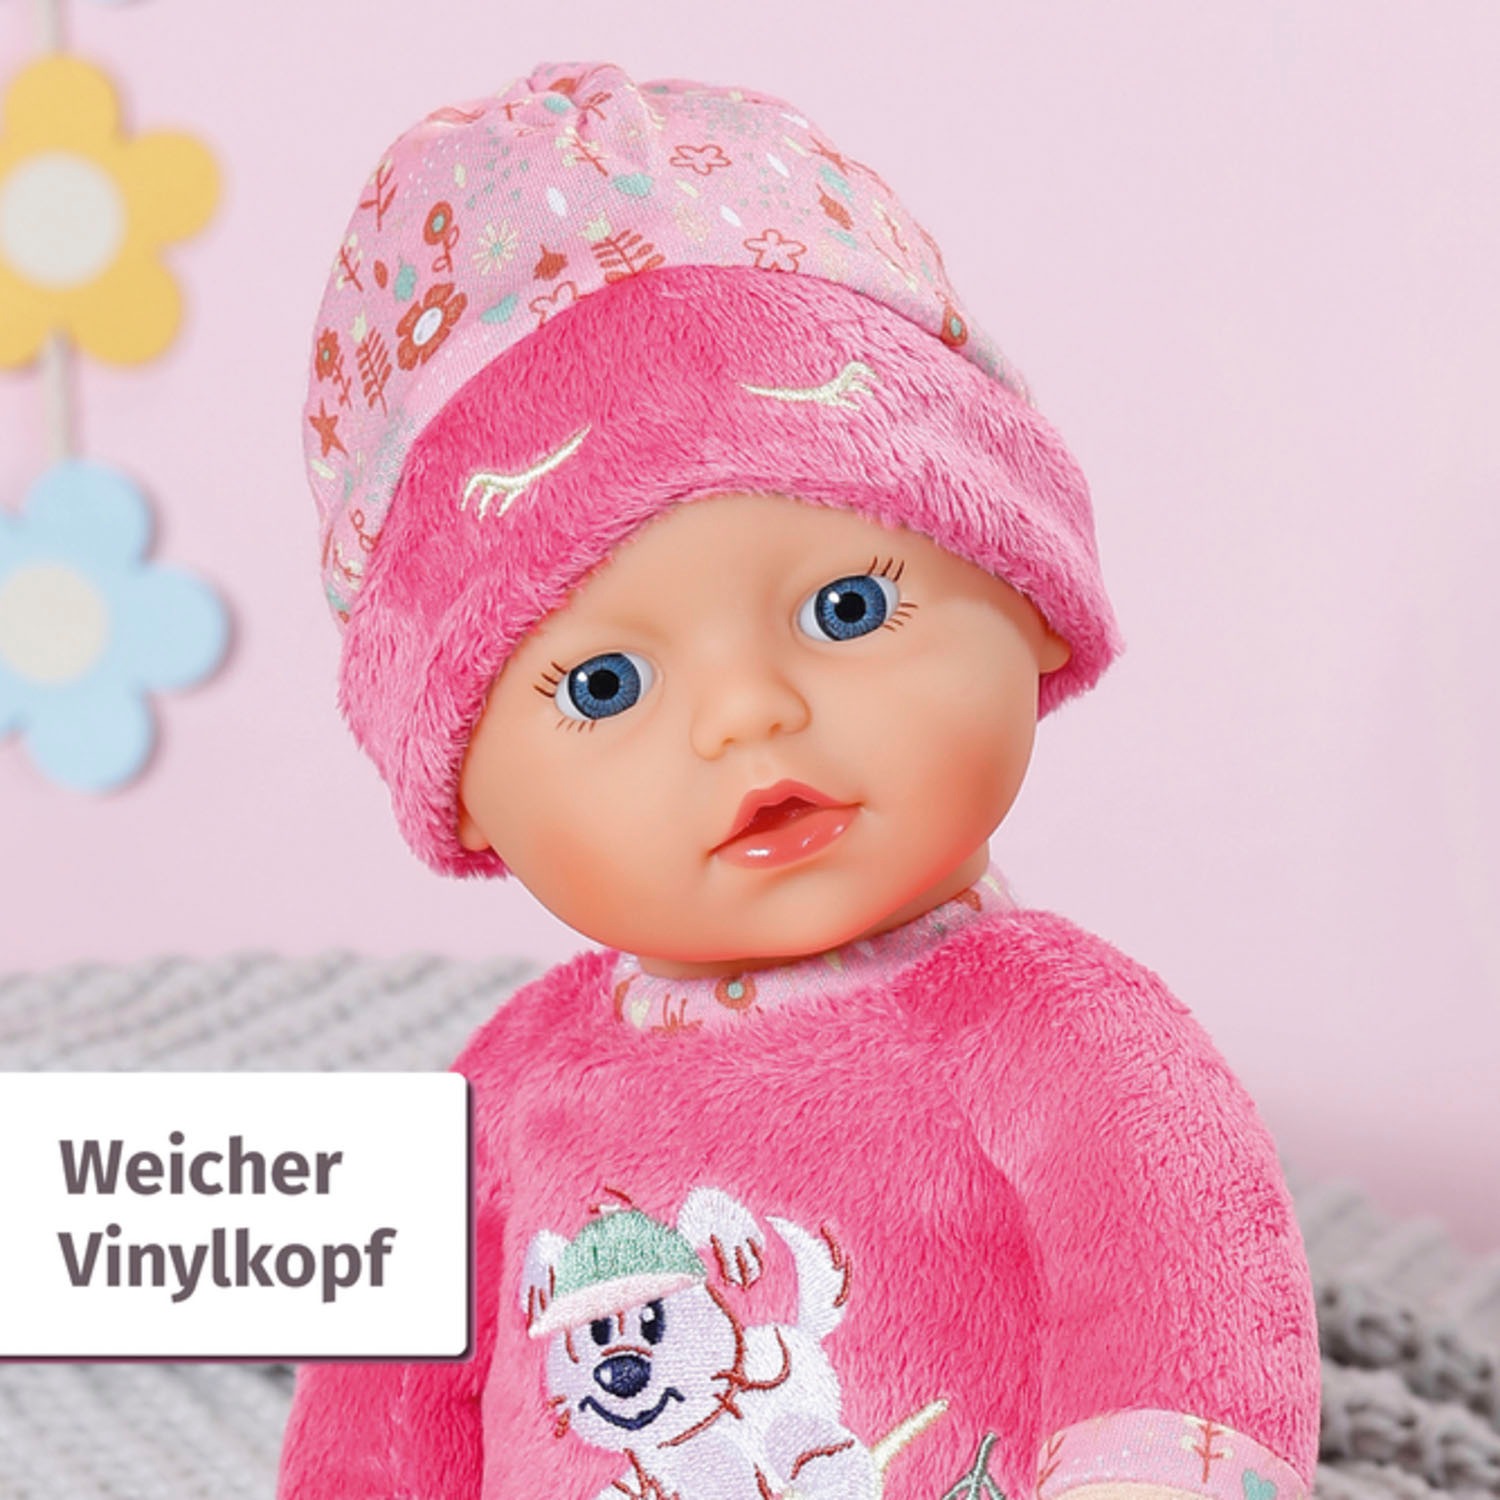 Baby Born Babypuppe »Sleepy for babies, pink, 30 cm«, mit Rassel im Inneren